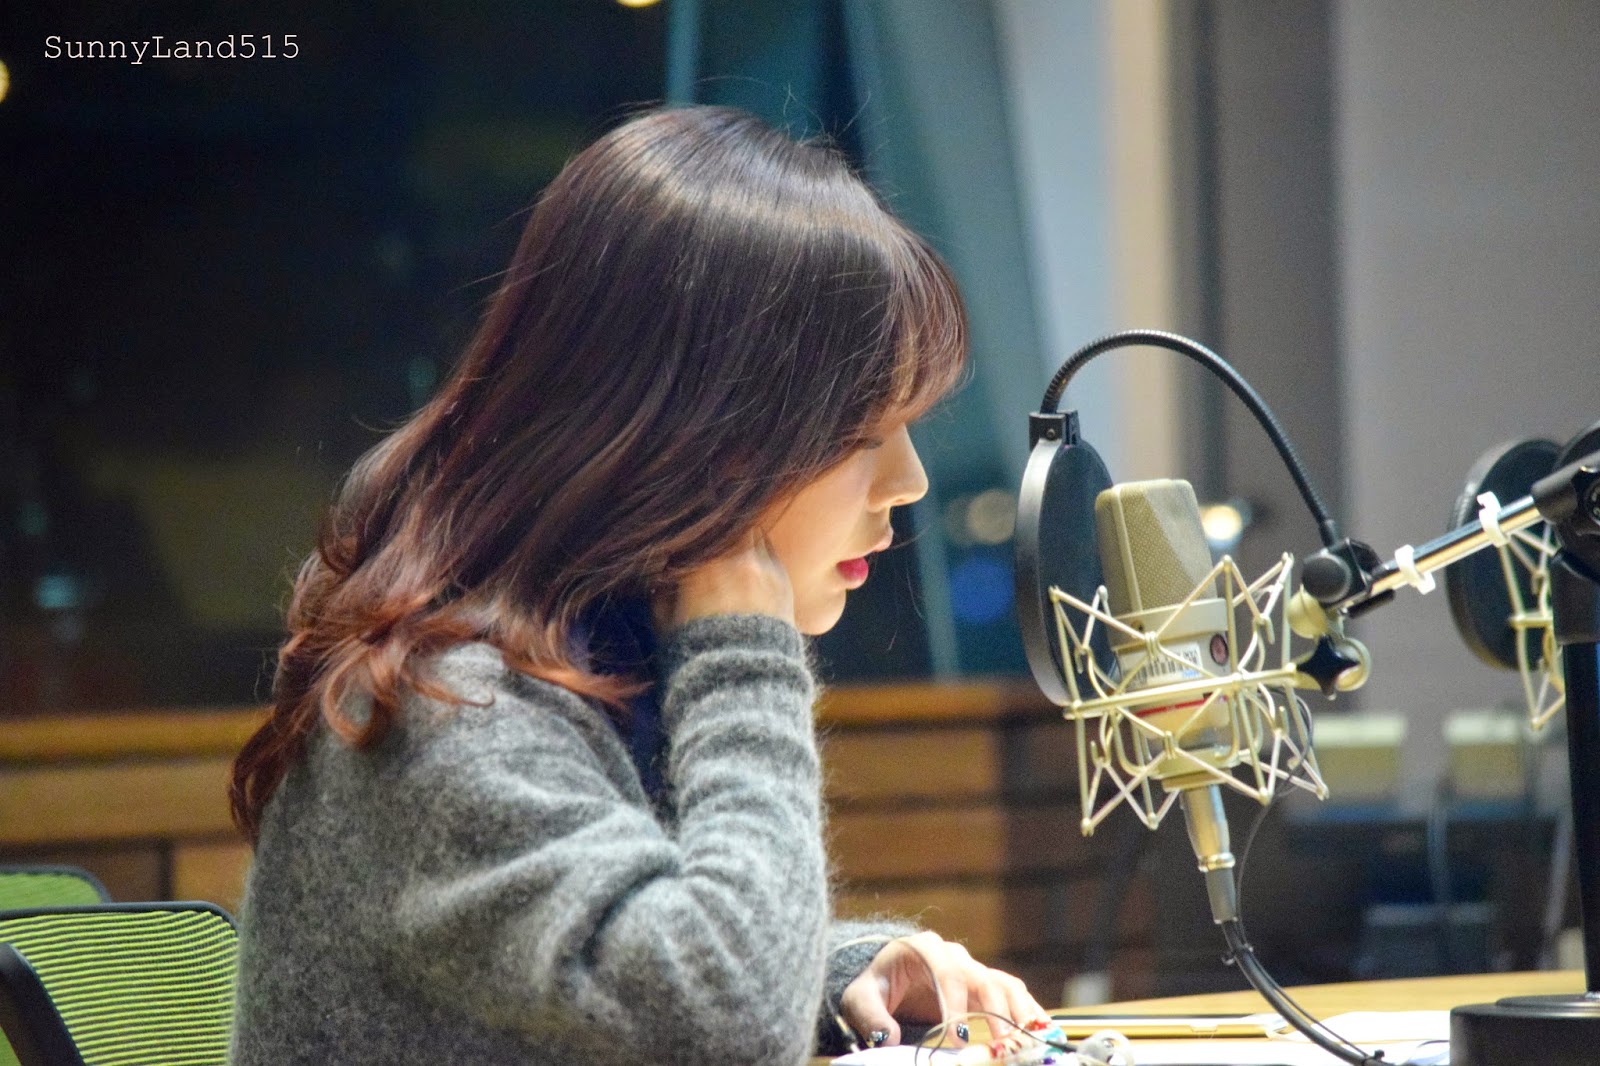 [OTHER][06-02-2015]Hình ảnh mới nhất từ DJ Sunny tại Radio MBC FM4U - "FM Date" - Page 10 DSC_0052_Fotor